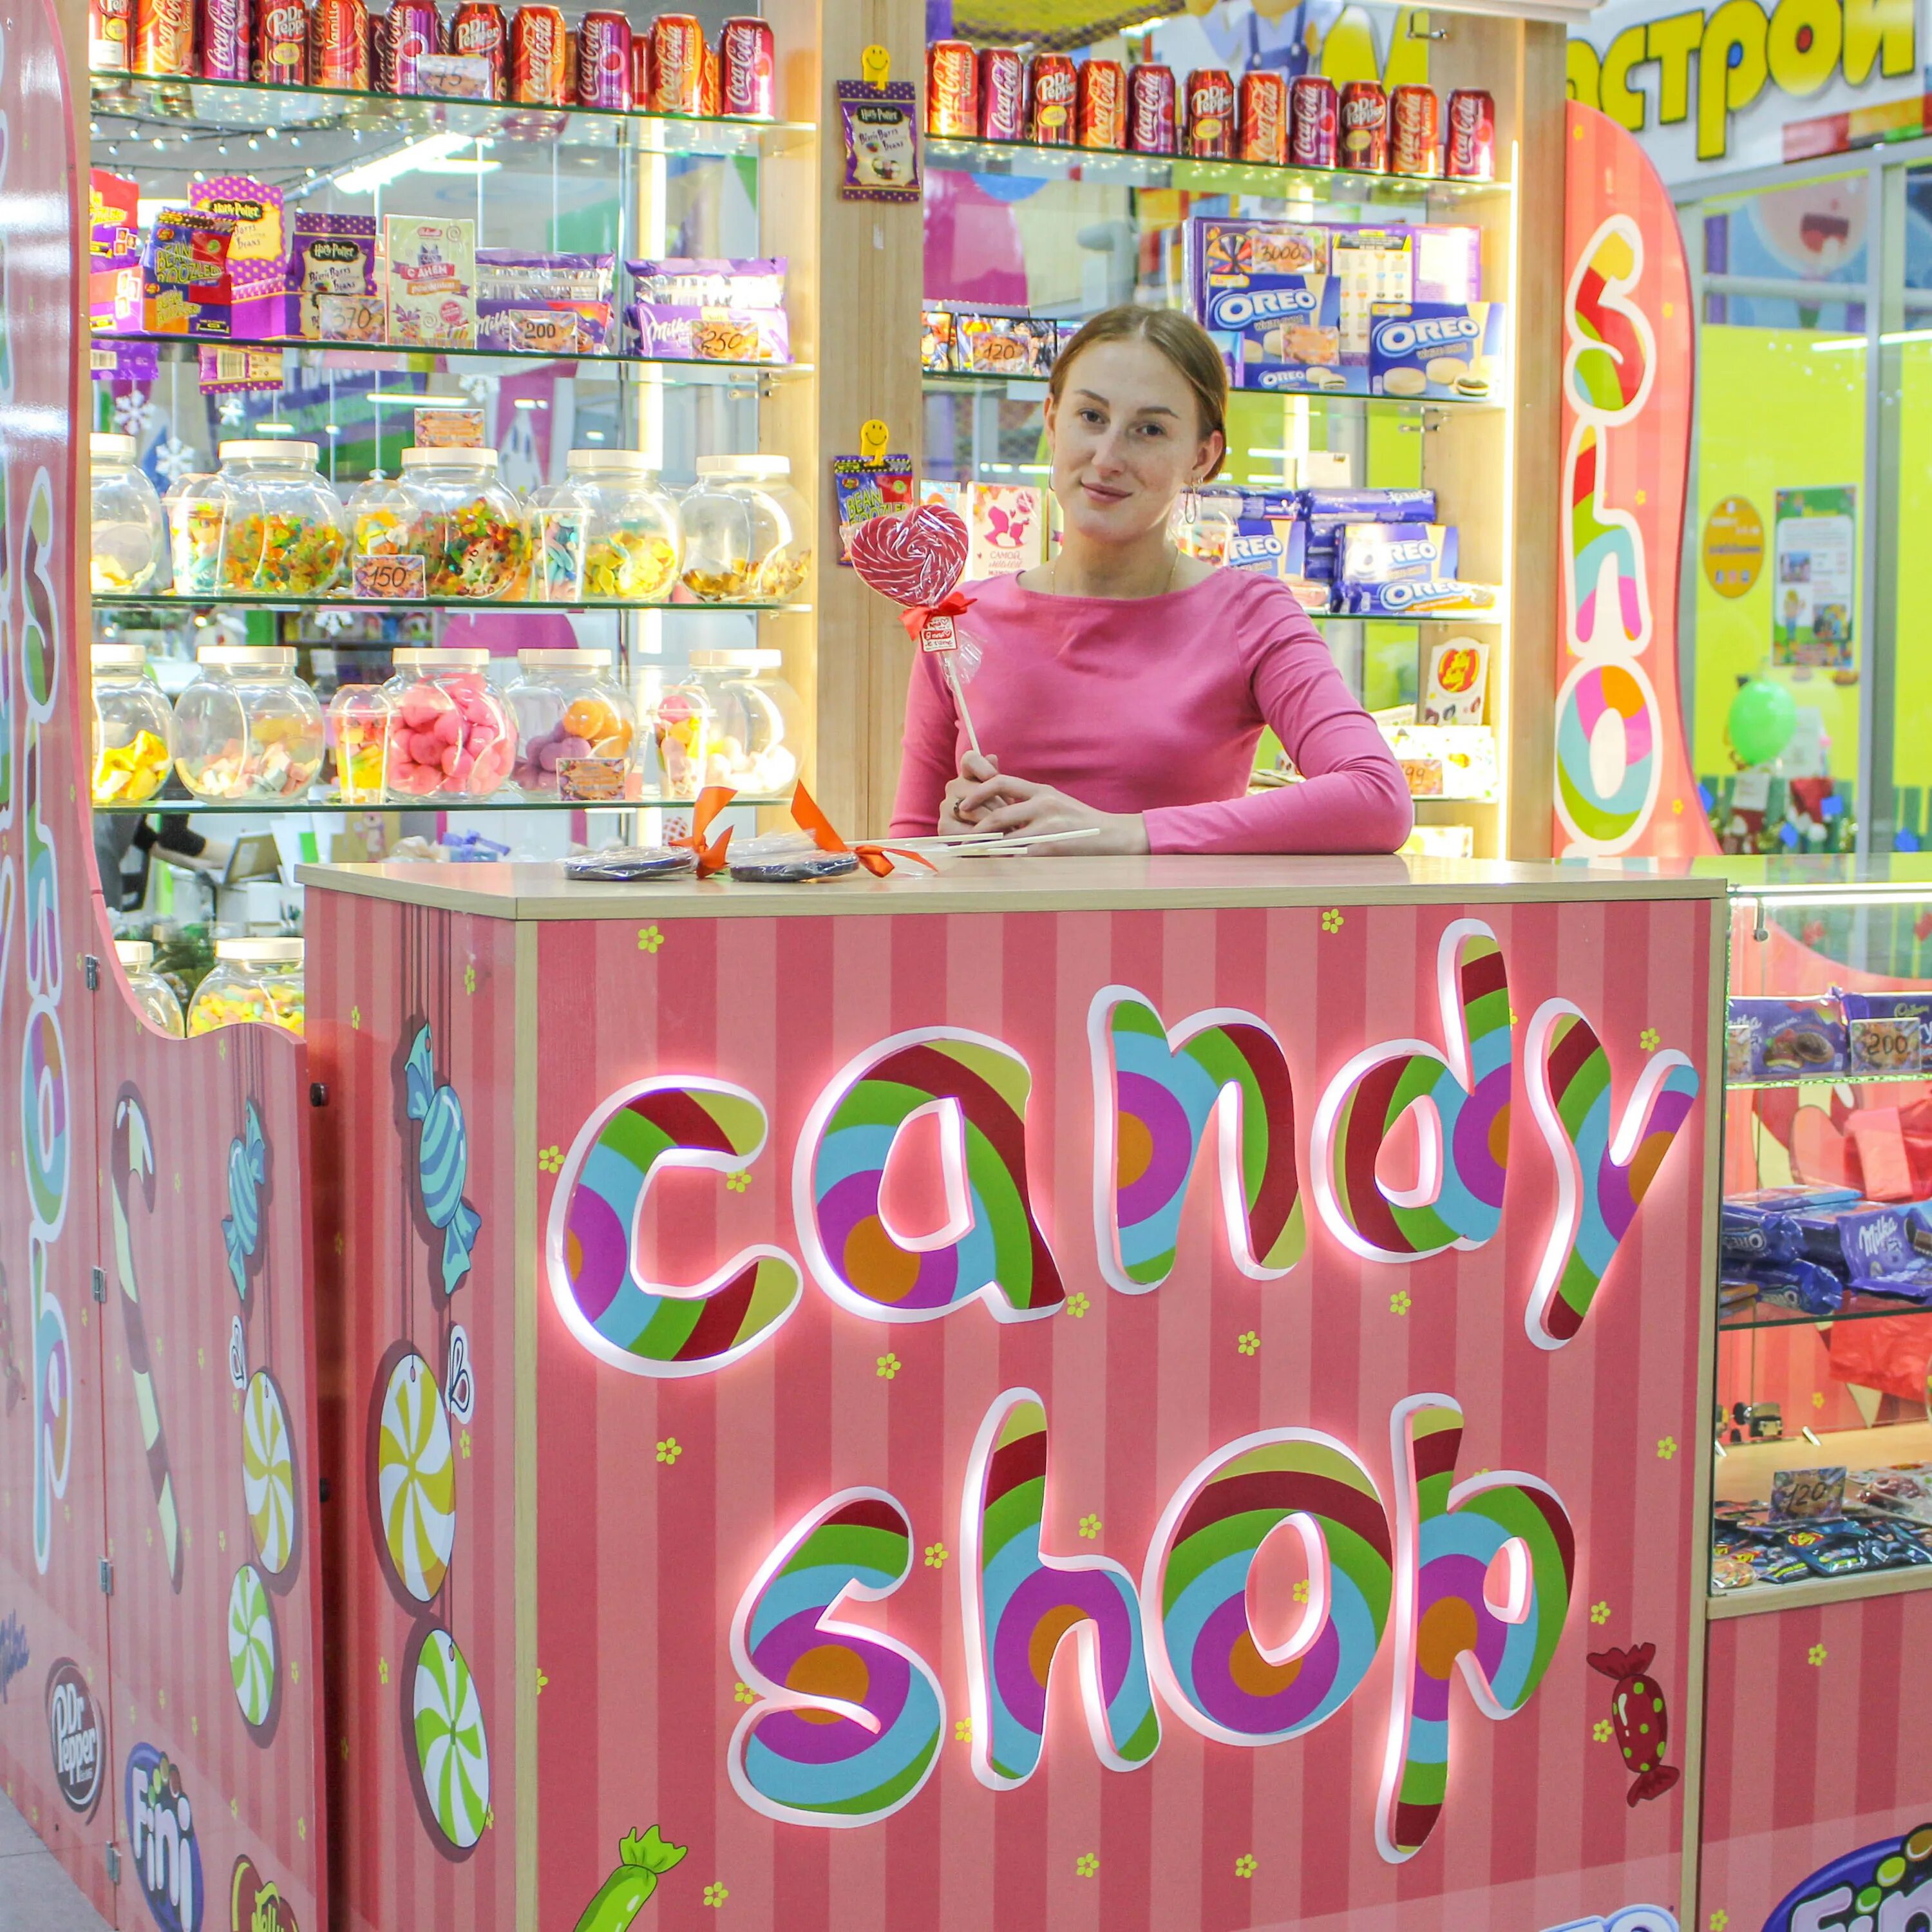 Магазин сладостей. Магазин сладостей вывеска. Название для магазина сладостей. Кенди шоп магазин сладостей. Candy shop 3